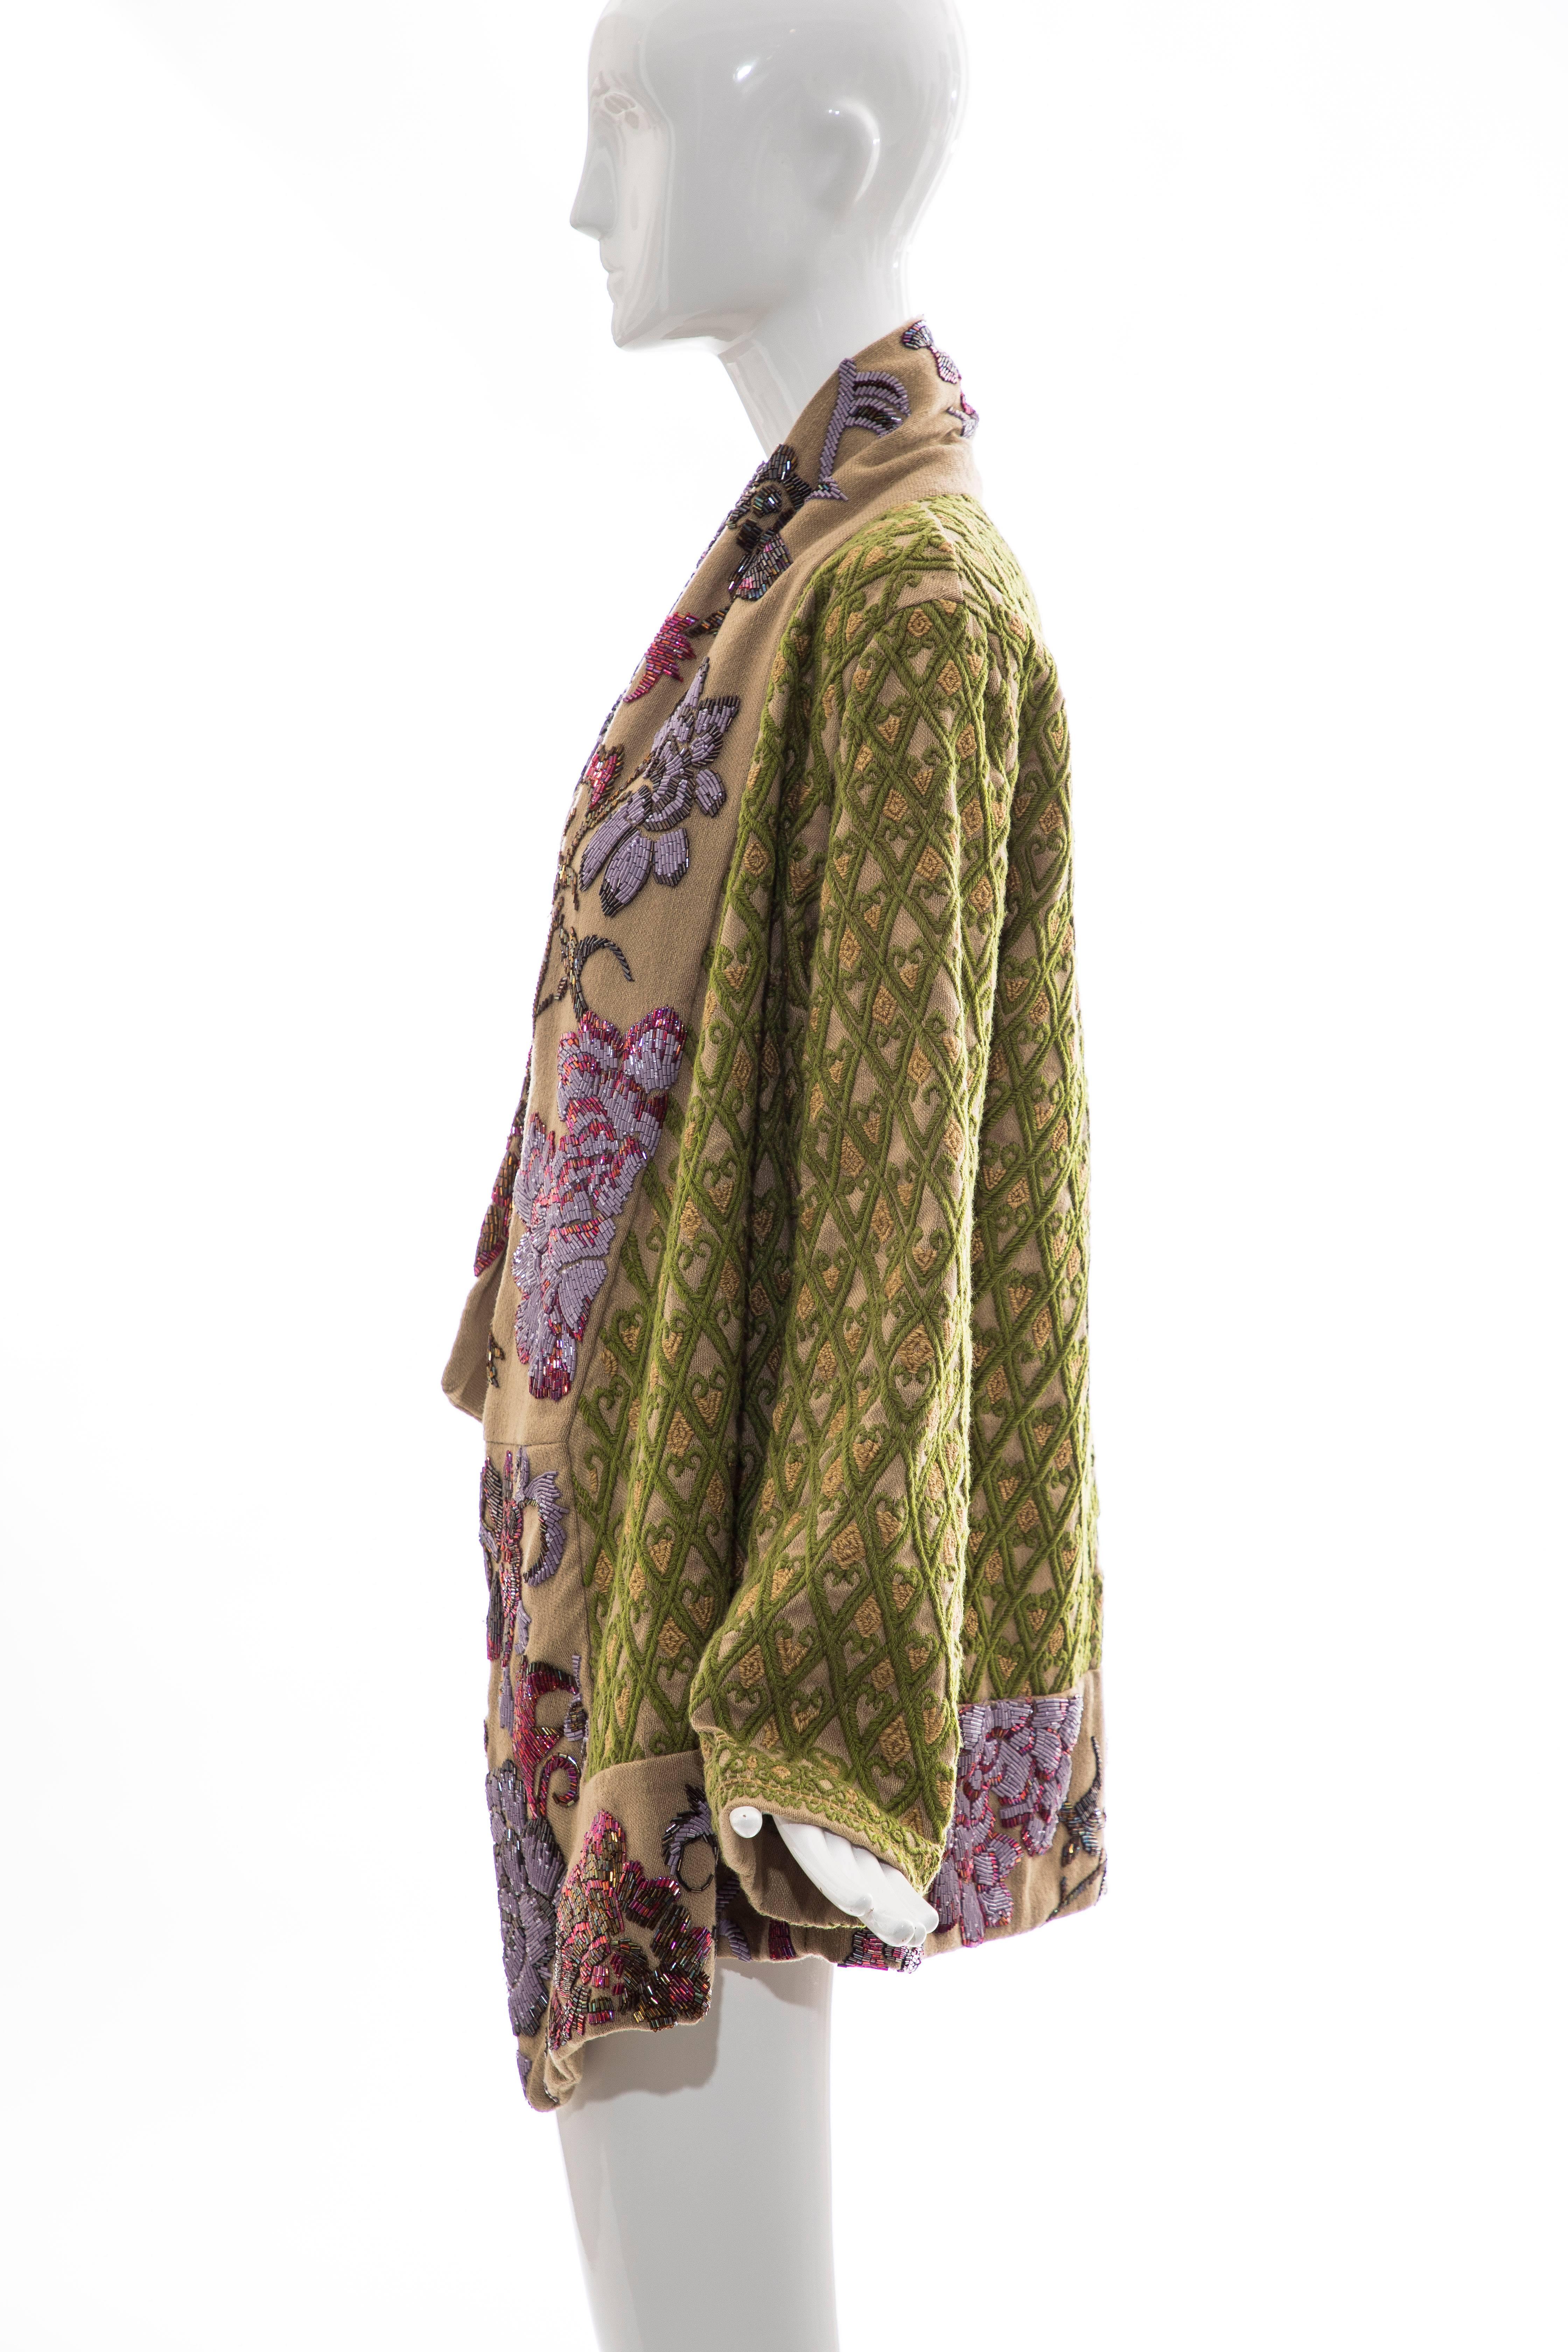 Dries Van Noten Runway Hemp Wool Floral Embroidered Beaded Jacket, Fall 2003 4